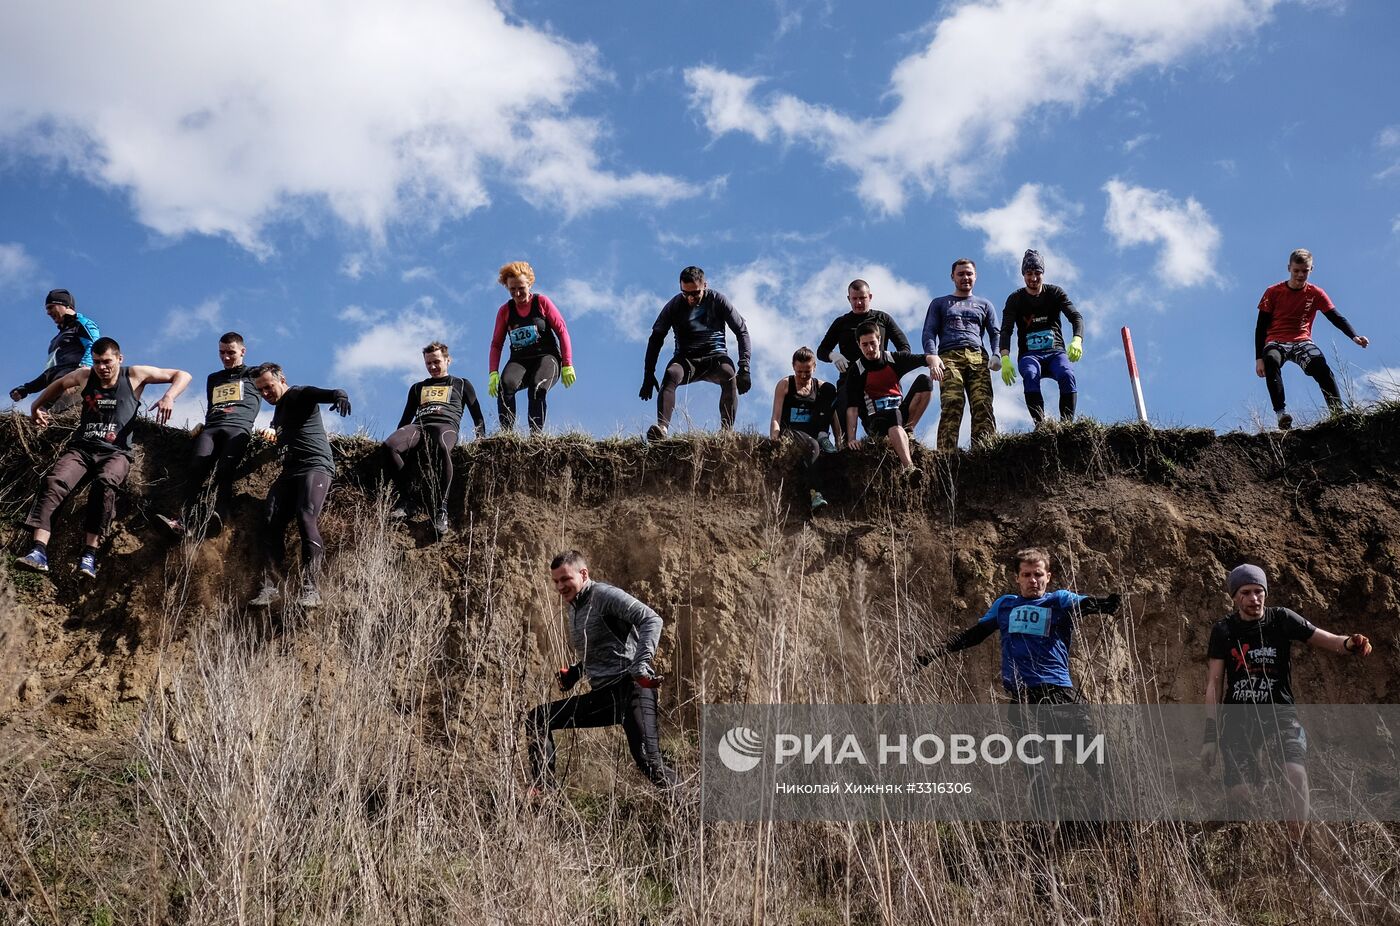 Экстремальная гонка с препятствиями "Крутые парни" в Краснодарском крае